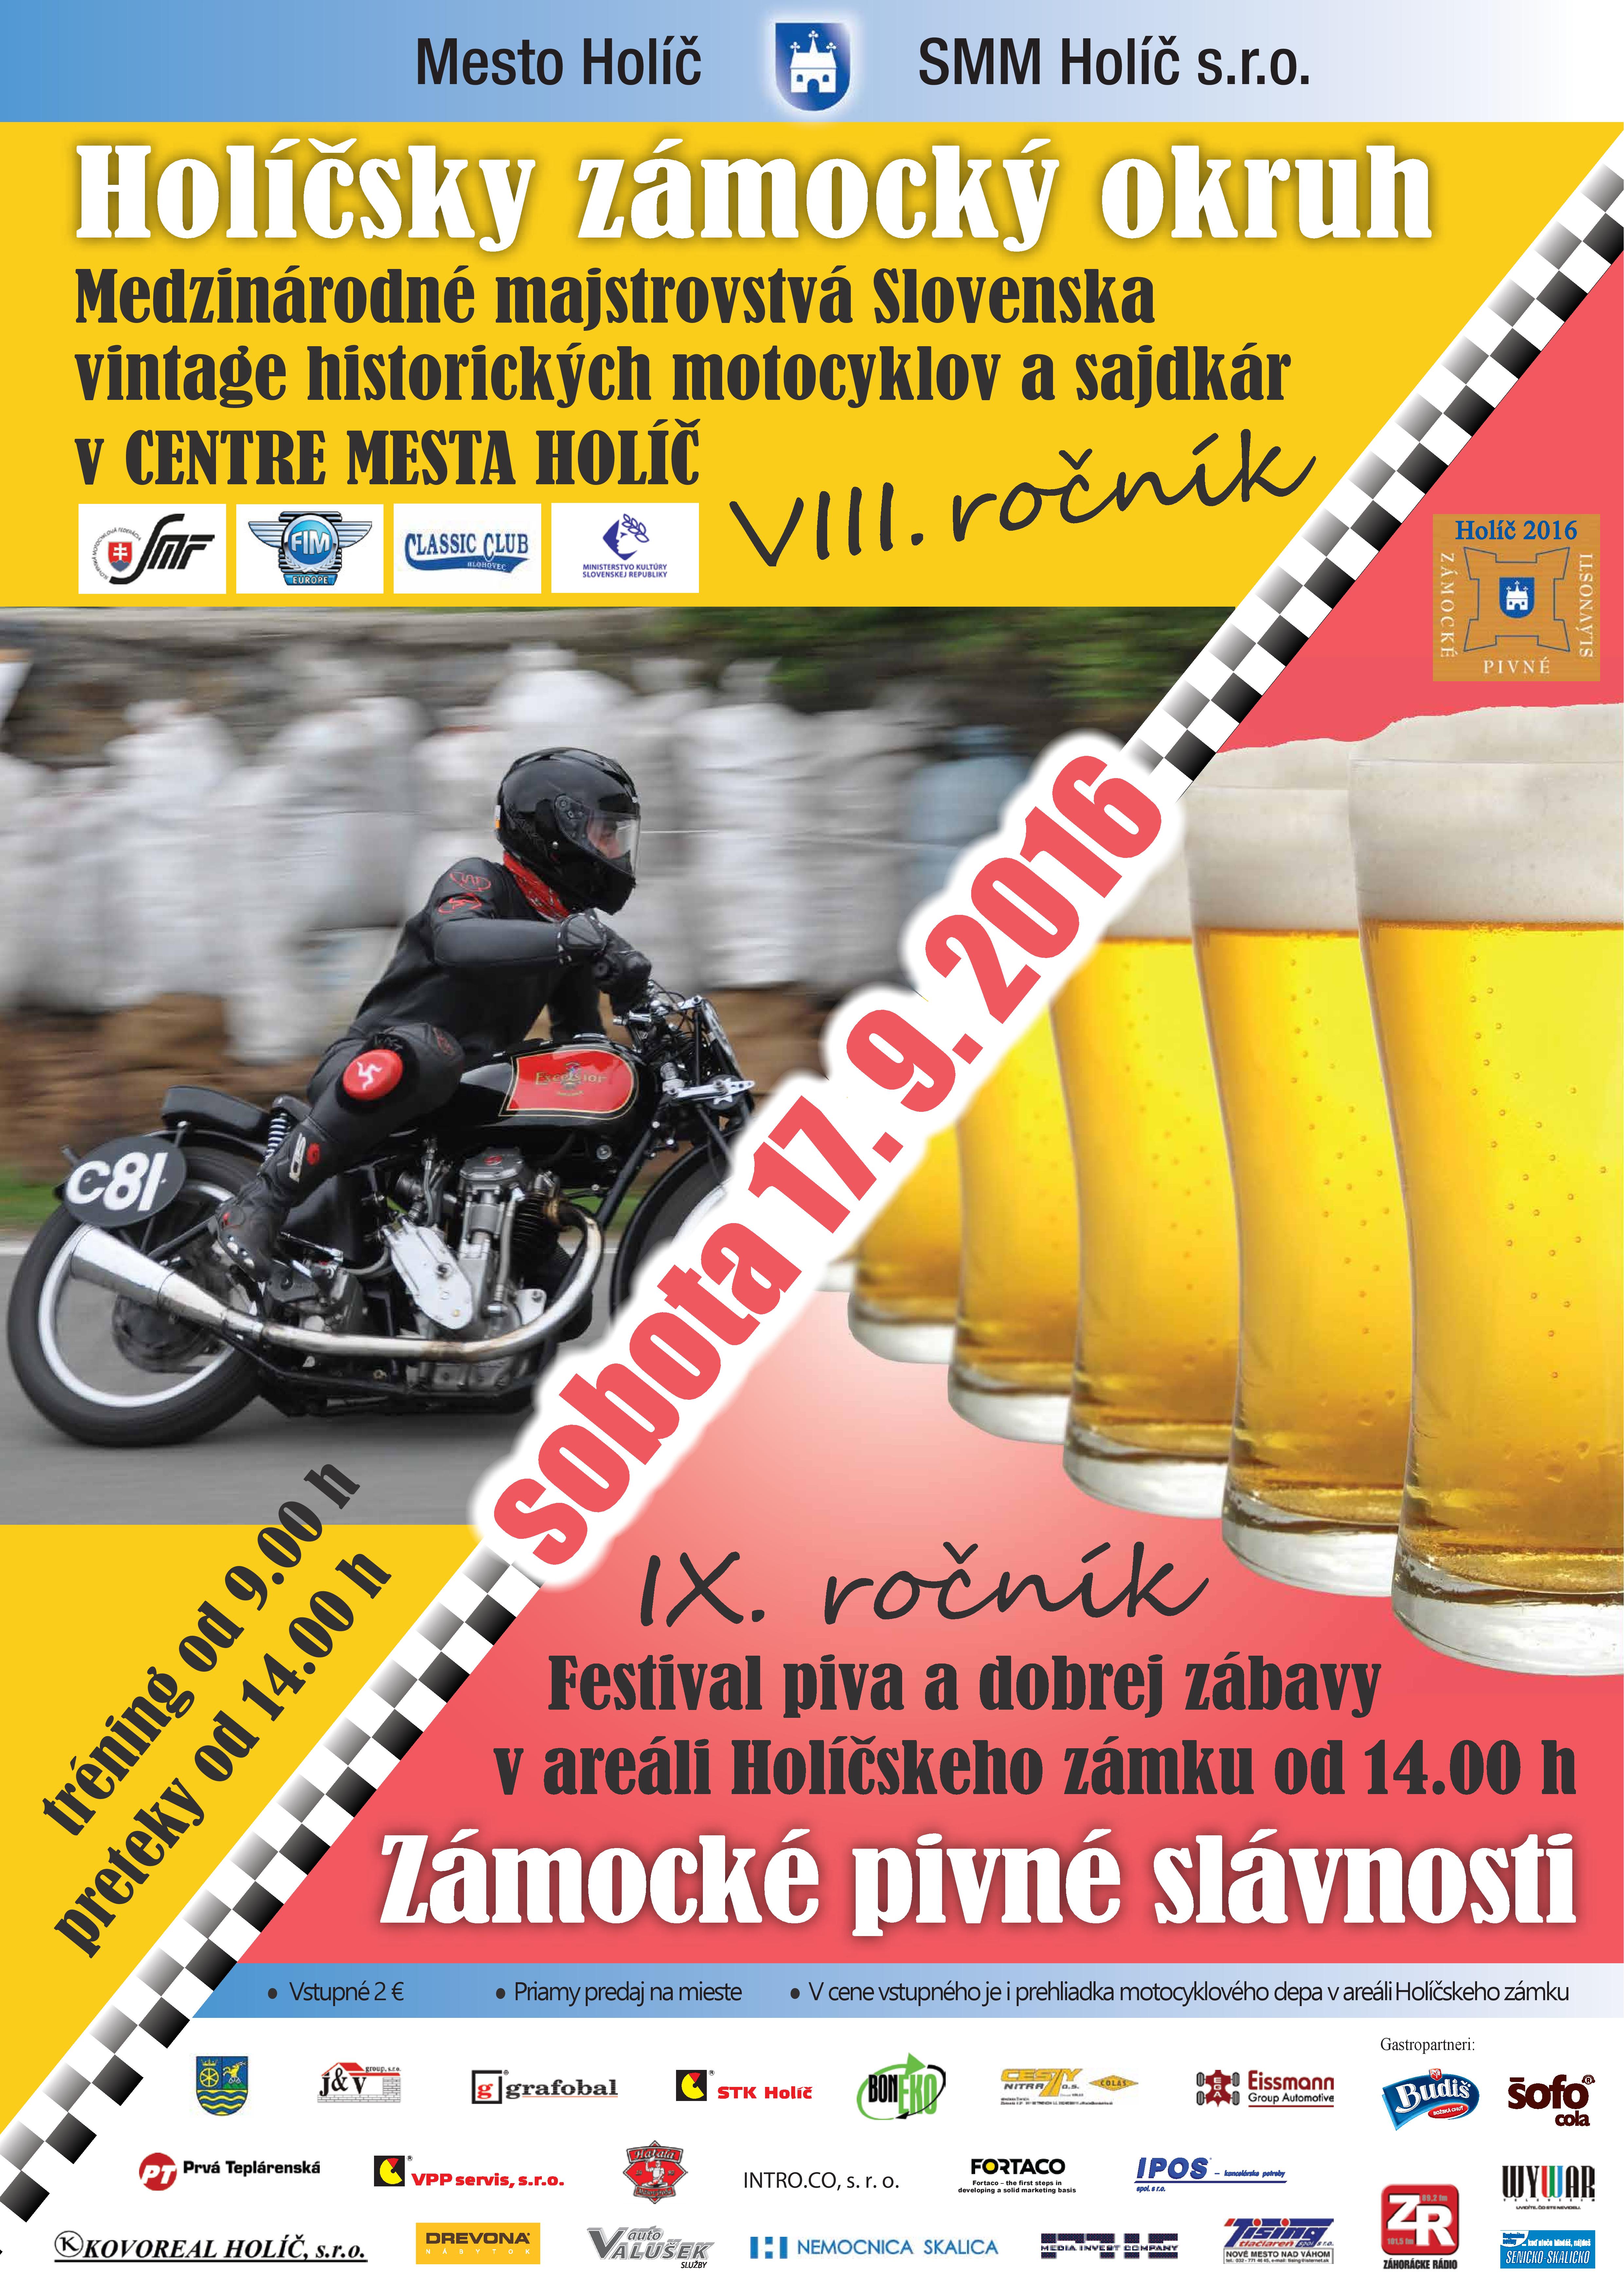 IX. ročník Zámockých pivných slávností 2016  a VIII. ročník Majstrovstiev Európy vintage historických motocyklov a sajdkár 